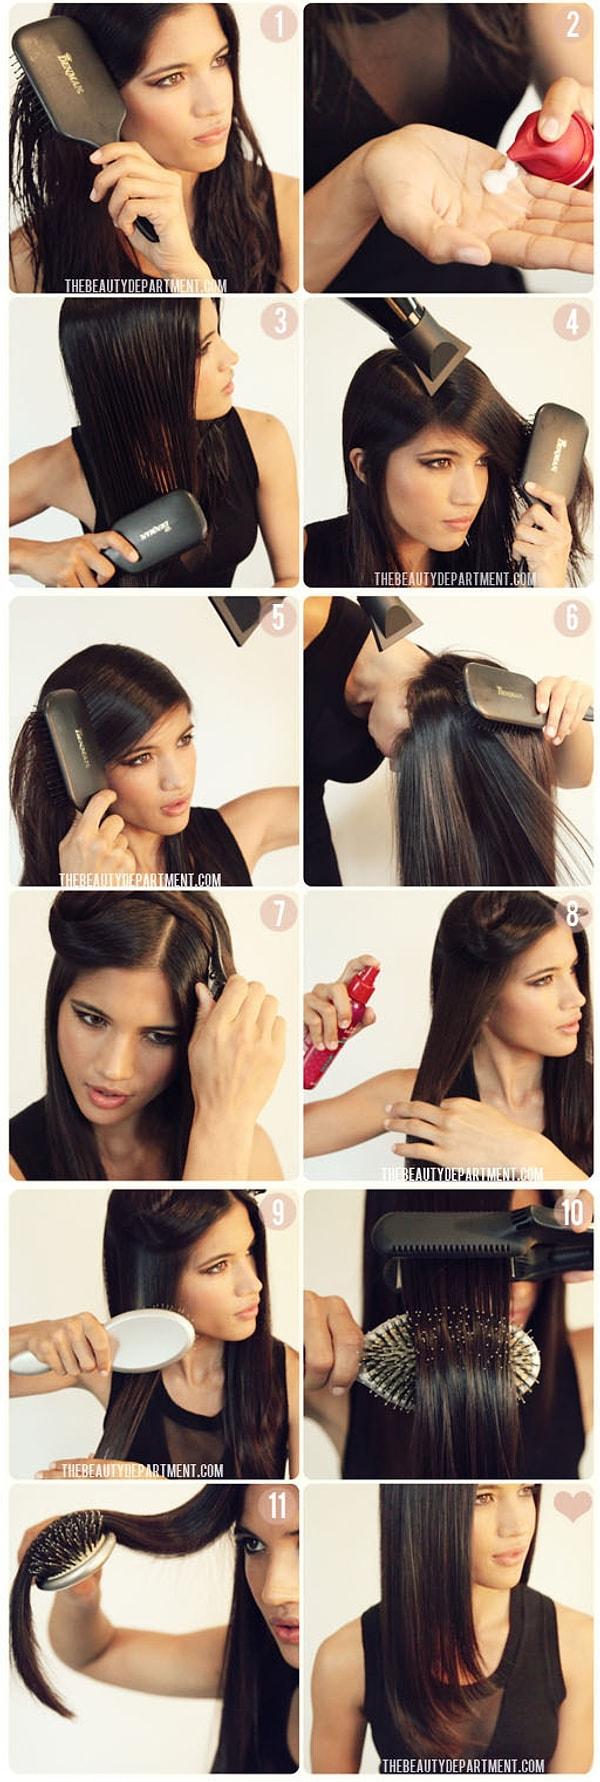 5. Bir fırça yardımıyla saçını şekildeki gibi kuruttuktan sonra, düzleştirirsen işin çook daha kolaylaşacaktır!